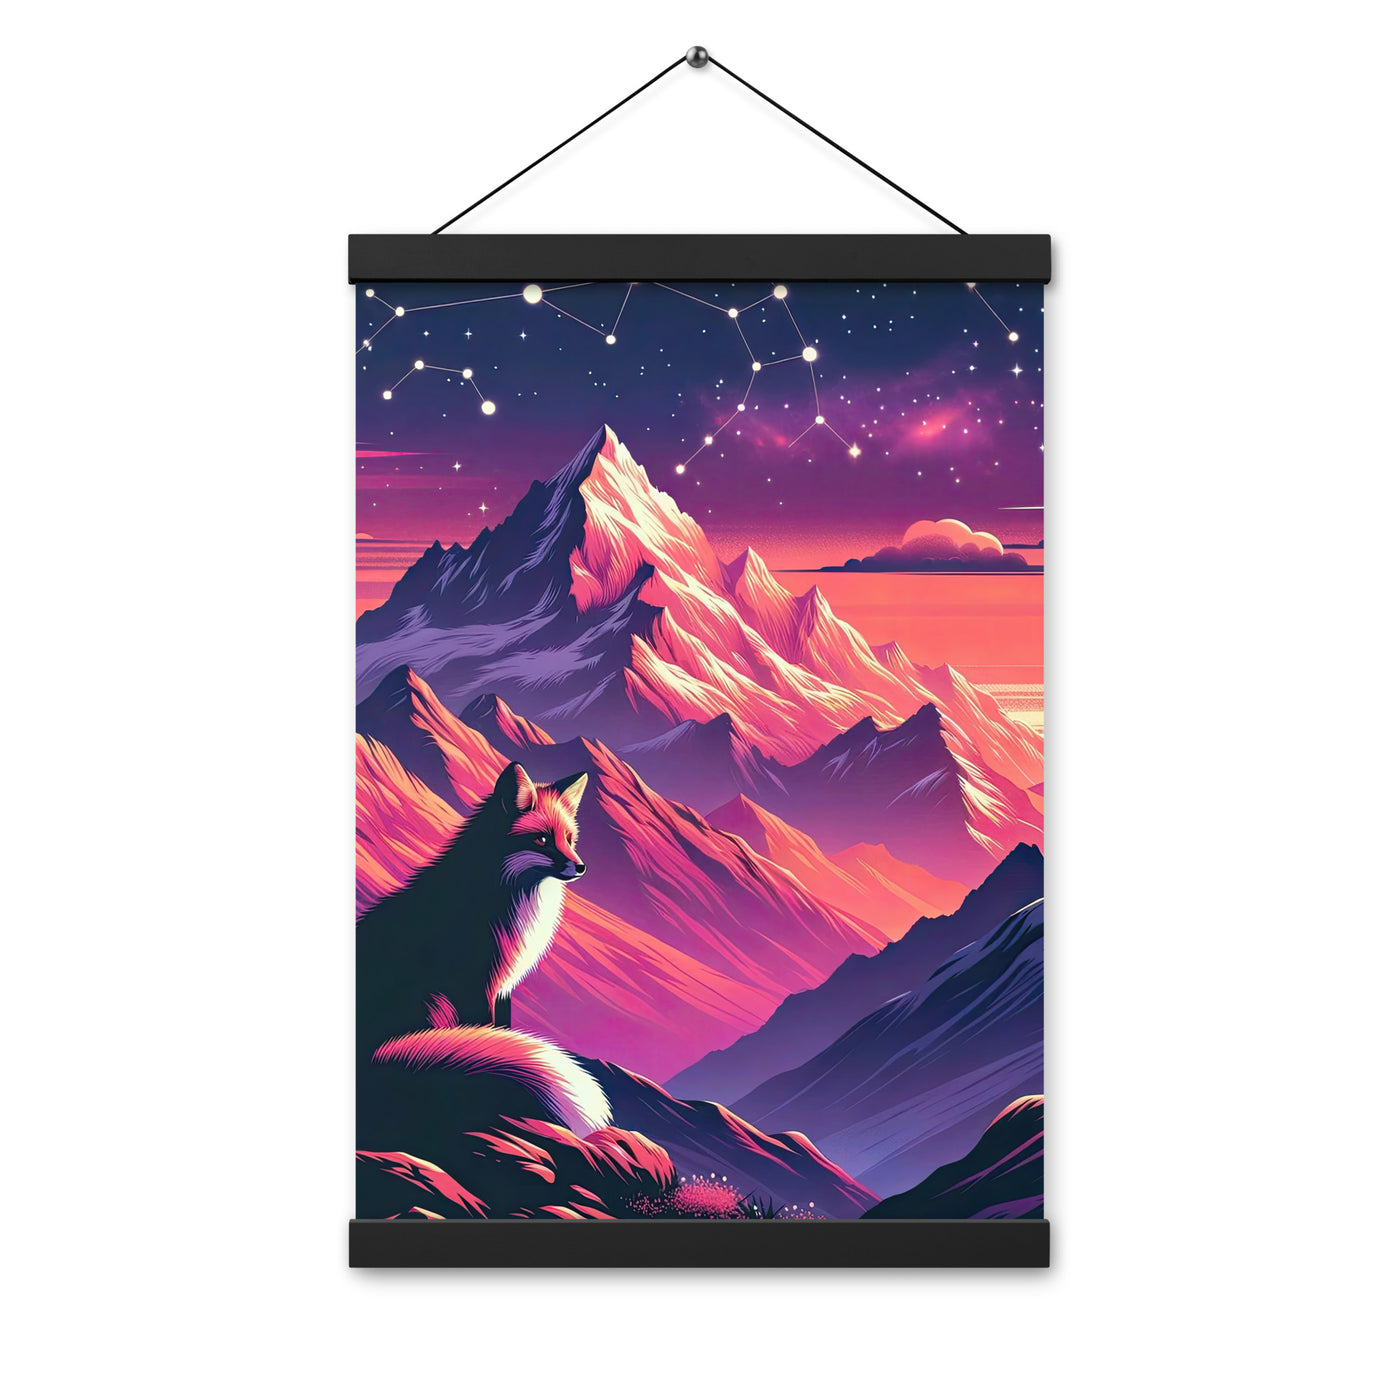 Fuchs im dramatischen Sonnenuntergang: Digitale Bergillustration in Abendfarben - Premium Poster mit Aufhängung camping xxx yyy zzz 30.5 x 45.7 cm